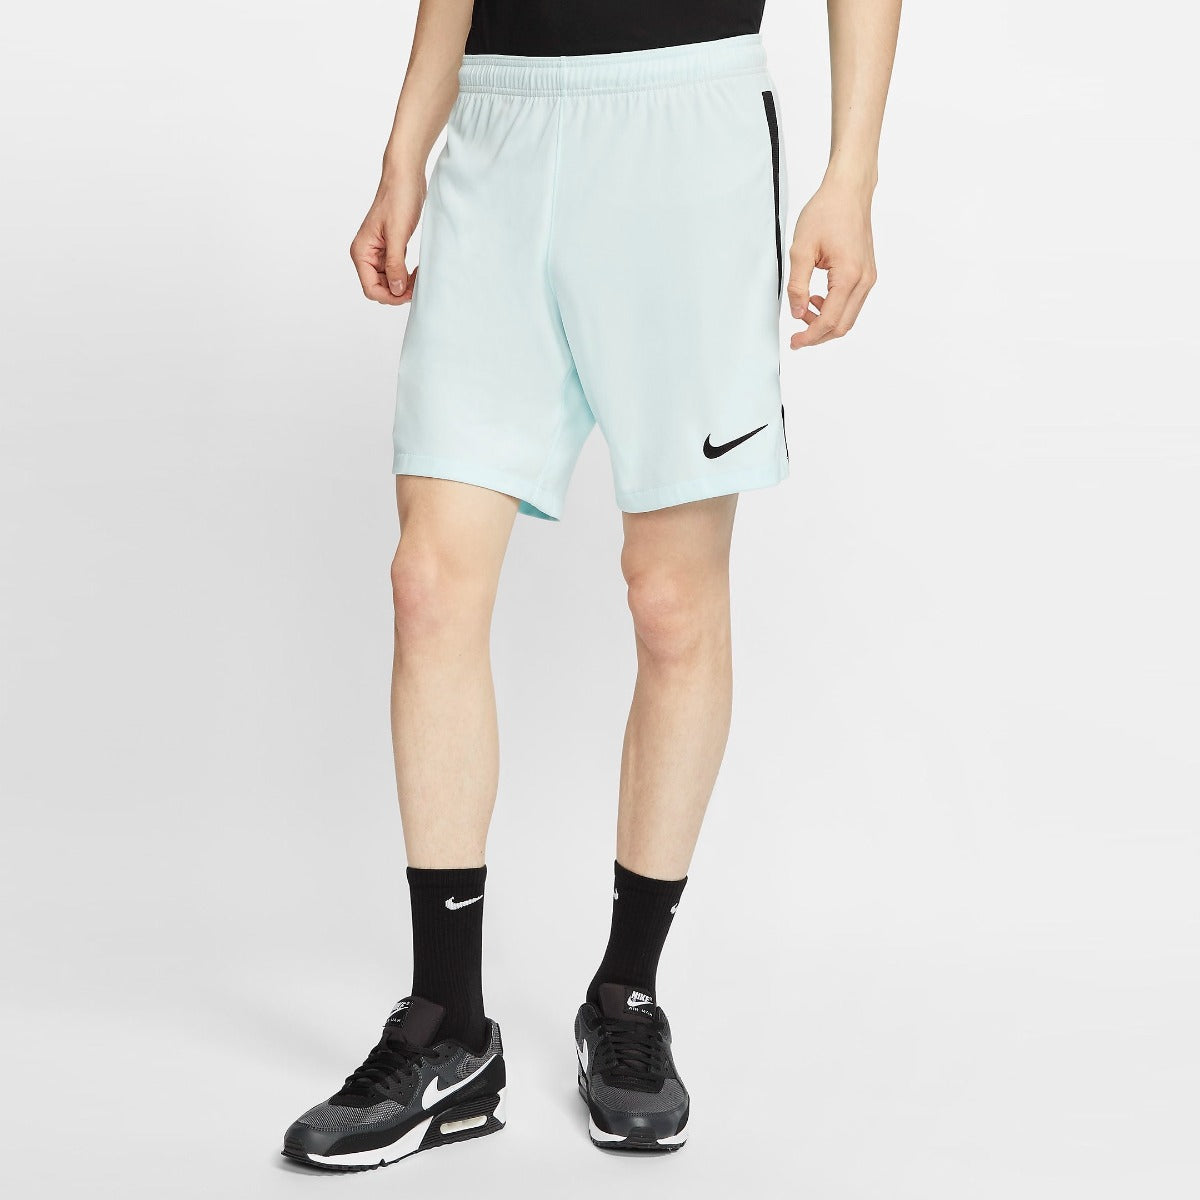 Nike, Pantaloncini da trasferta Nike 2020-21 Portogallo - Teal Tint-Black